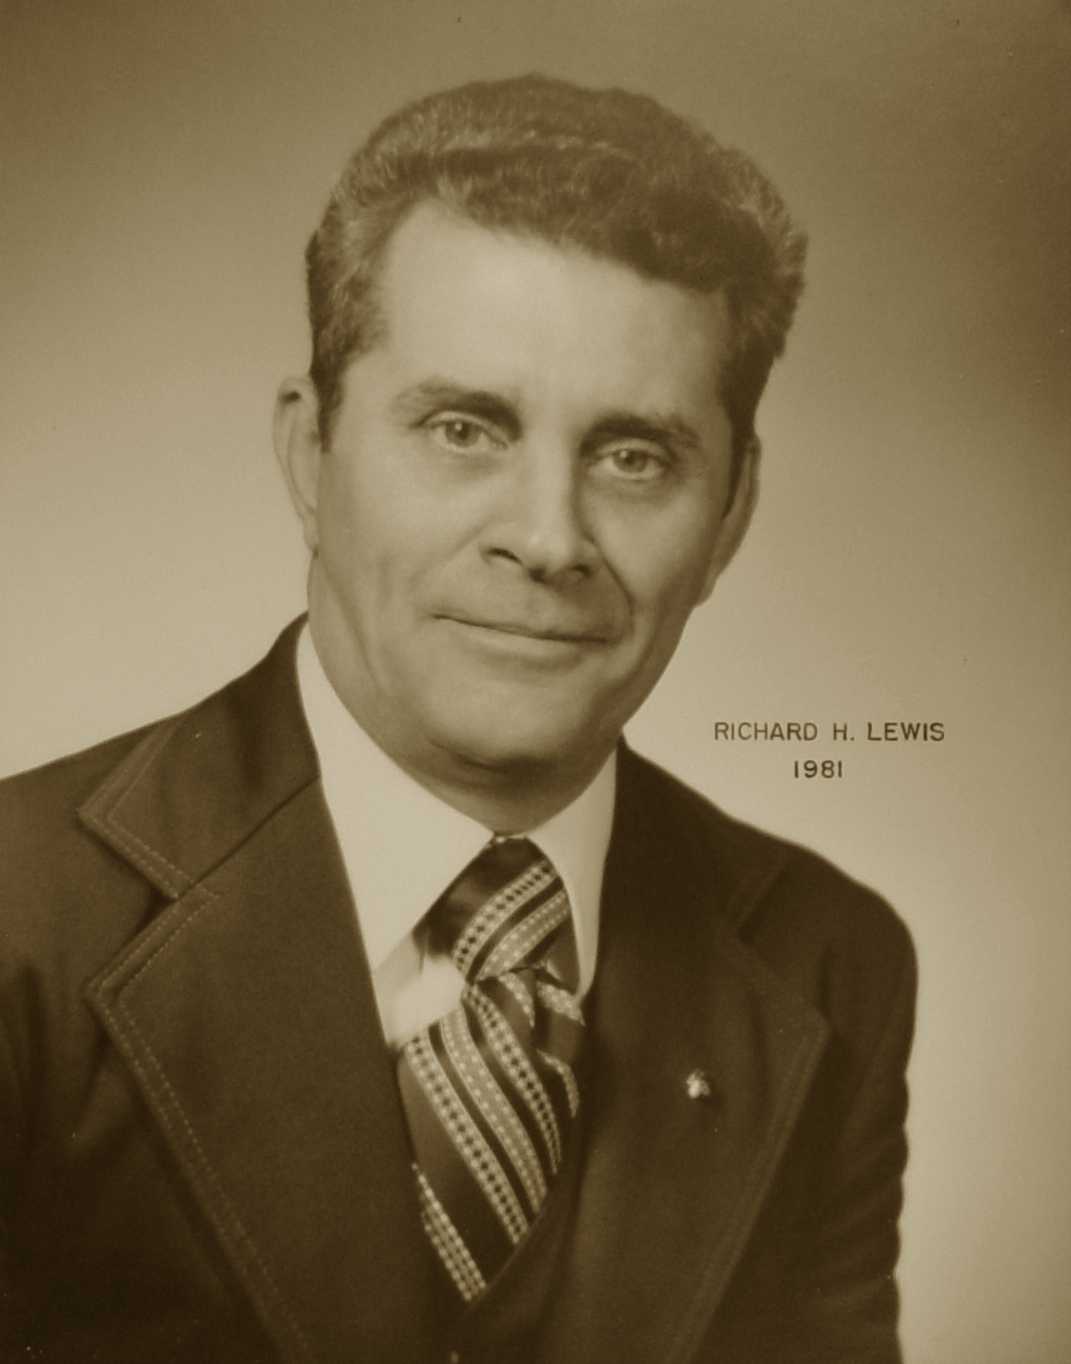 Richard H. Lewis, 1981